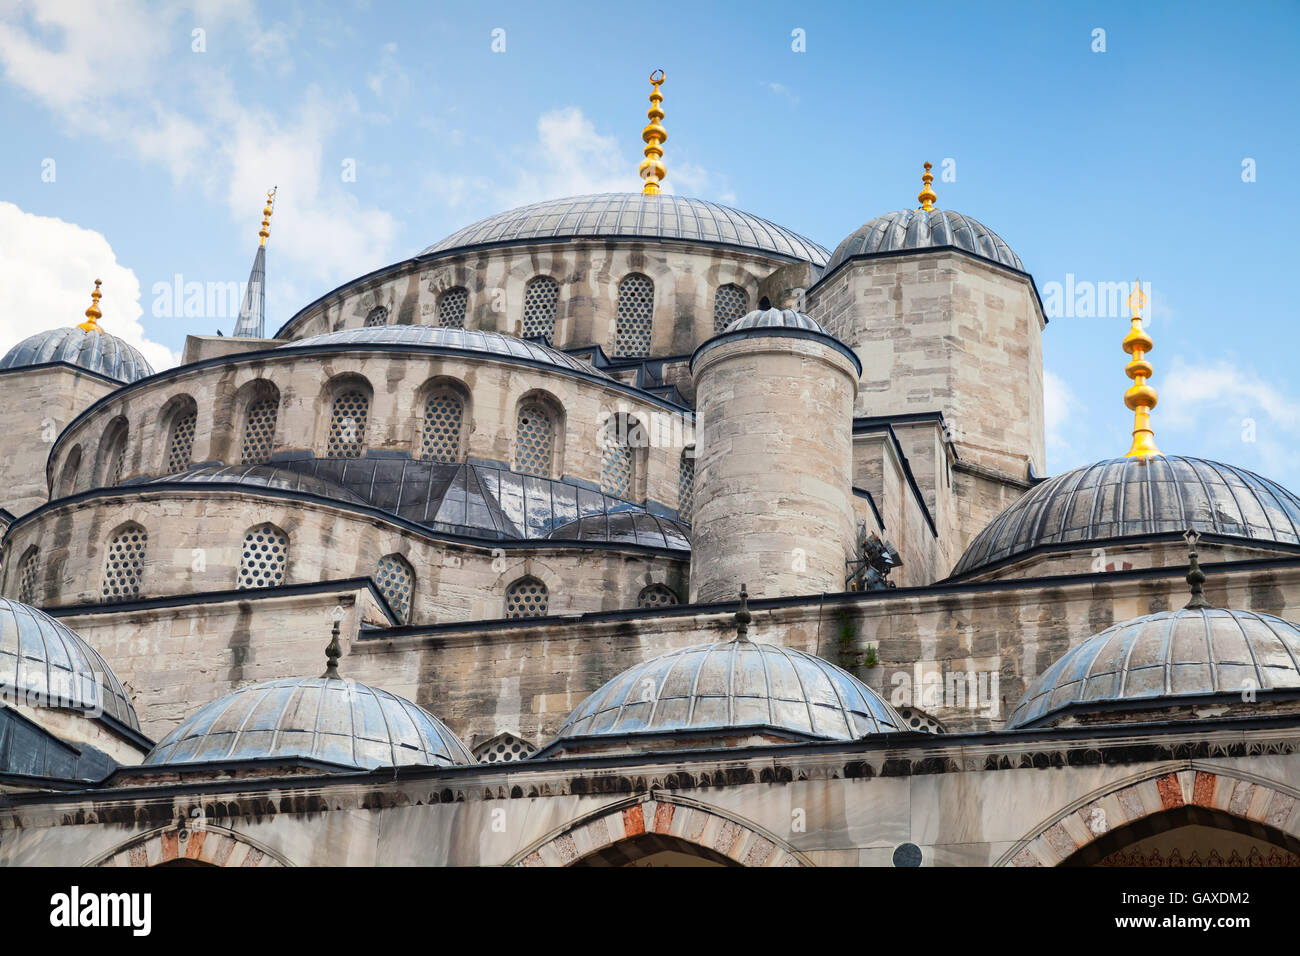 La Moschea Blu o di Sultan Ahmed moschea, è una moschea storica si trova a Istanbul, in Turchia, uno dei più famosi punti di riferimento della città. Foto Stock